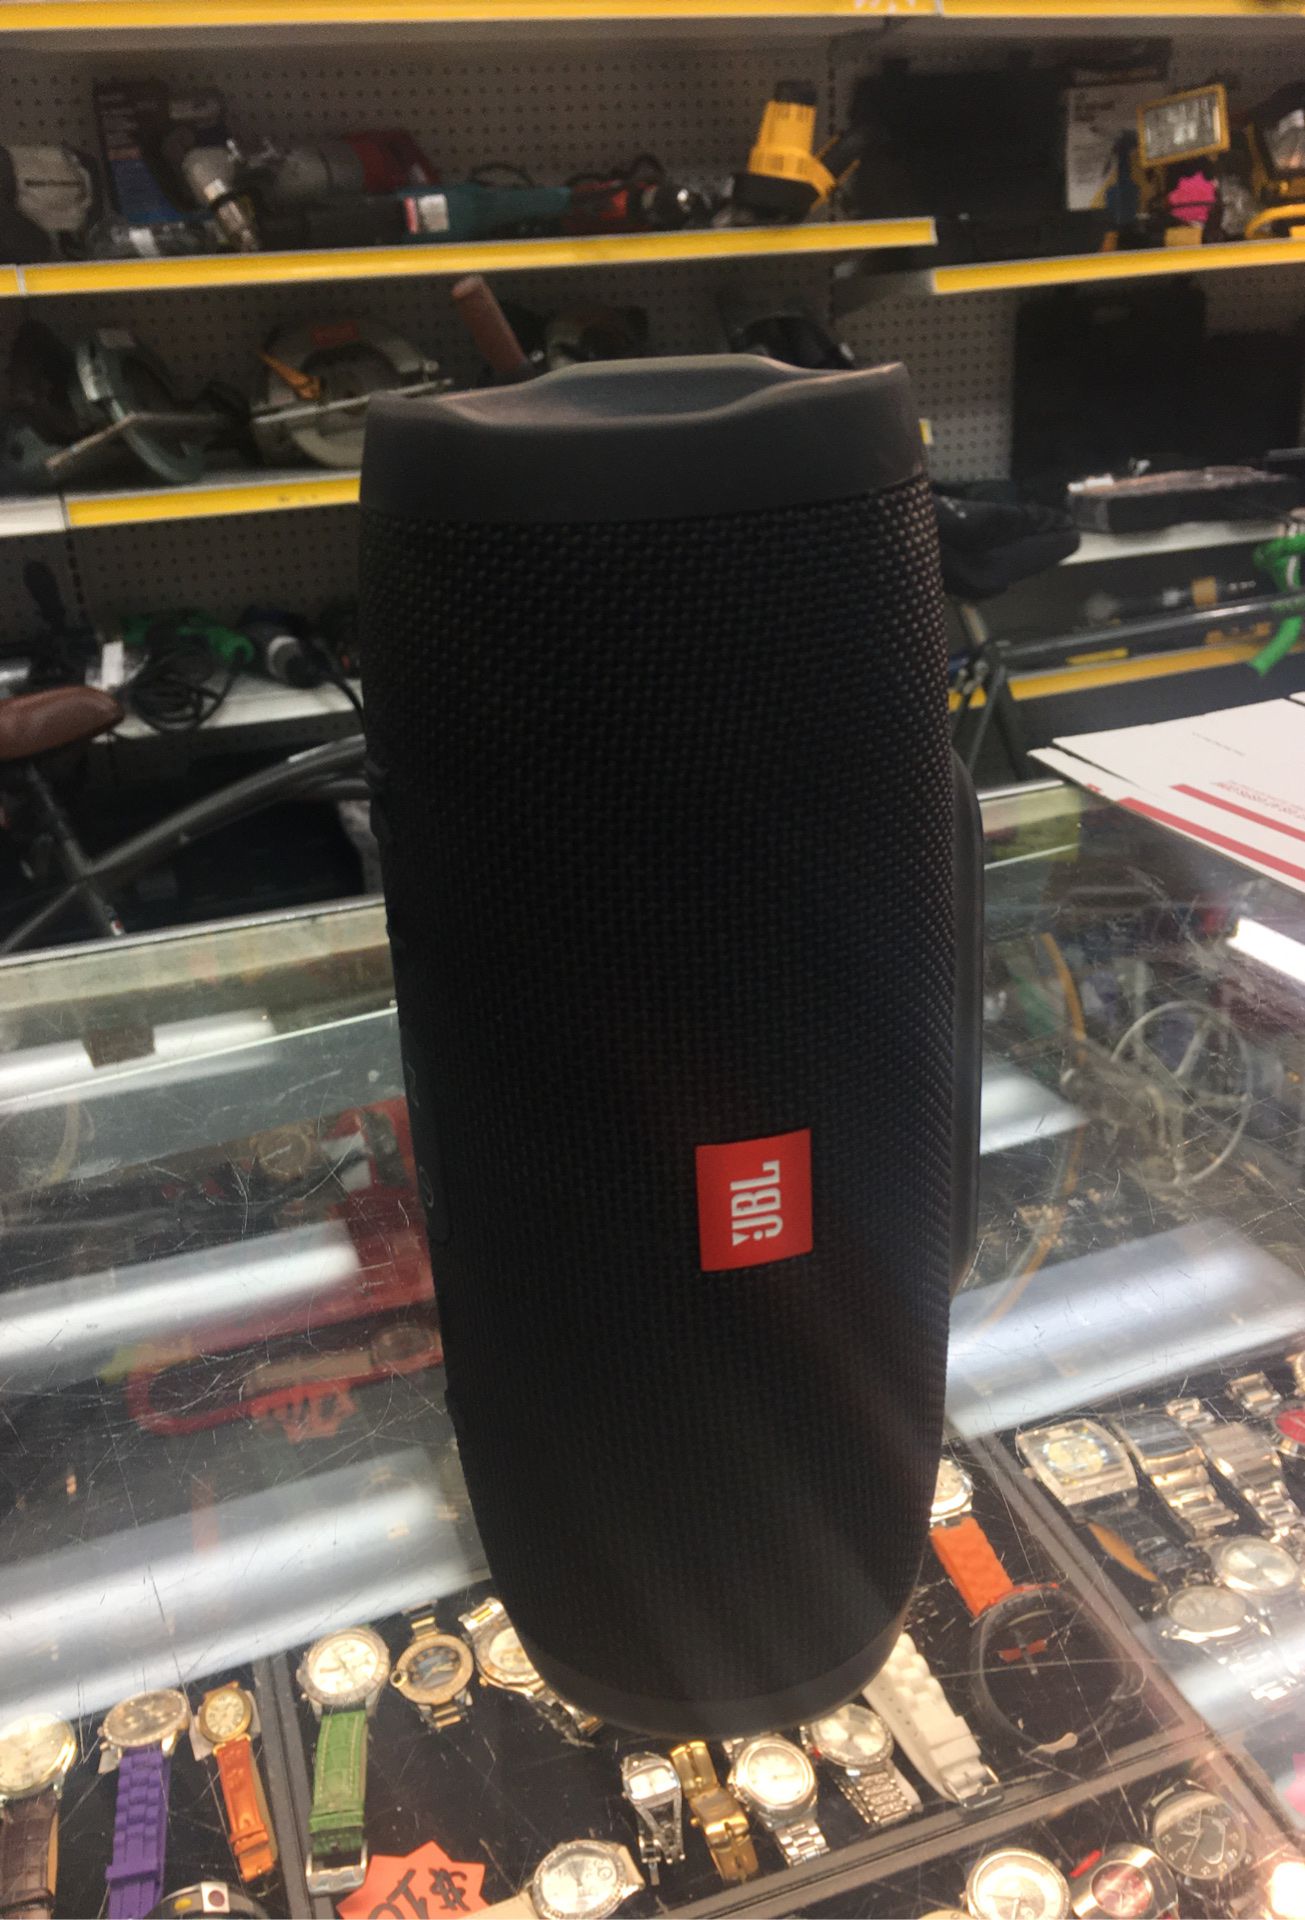 JBL charge 3 waterproof portable Bluetooth speaker